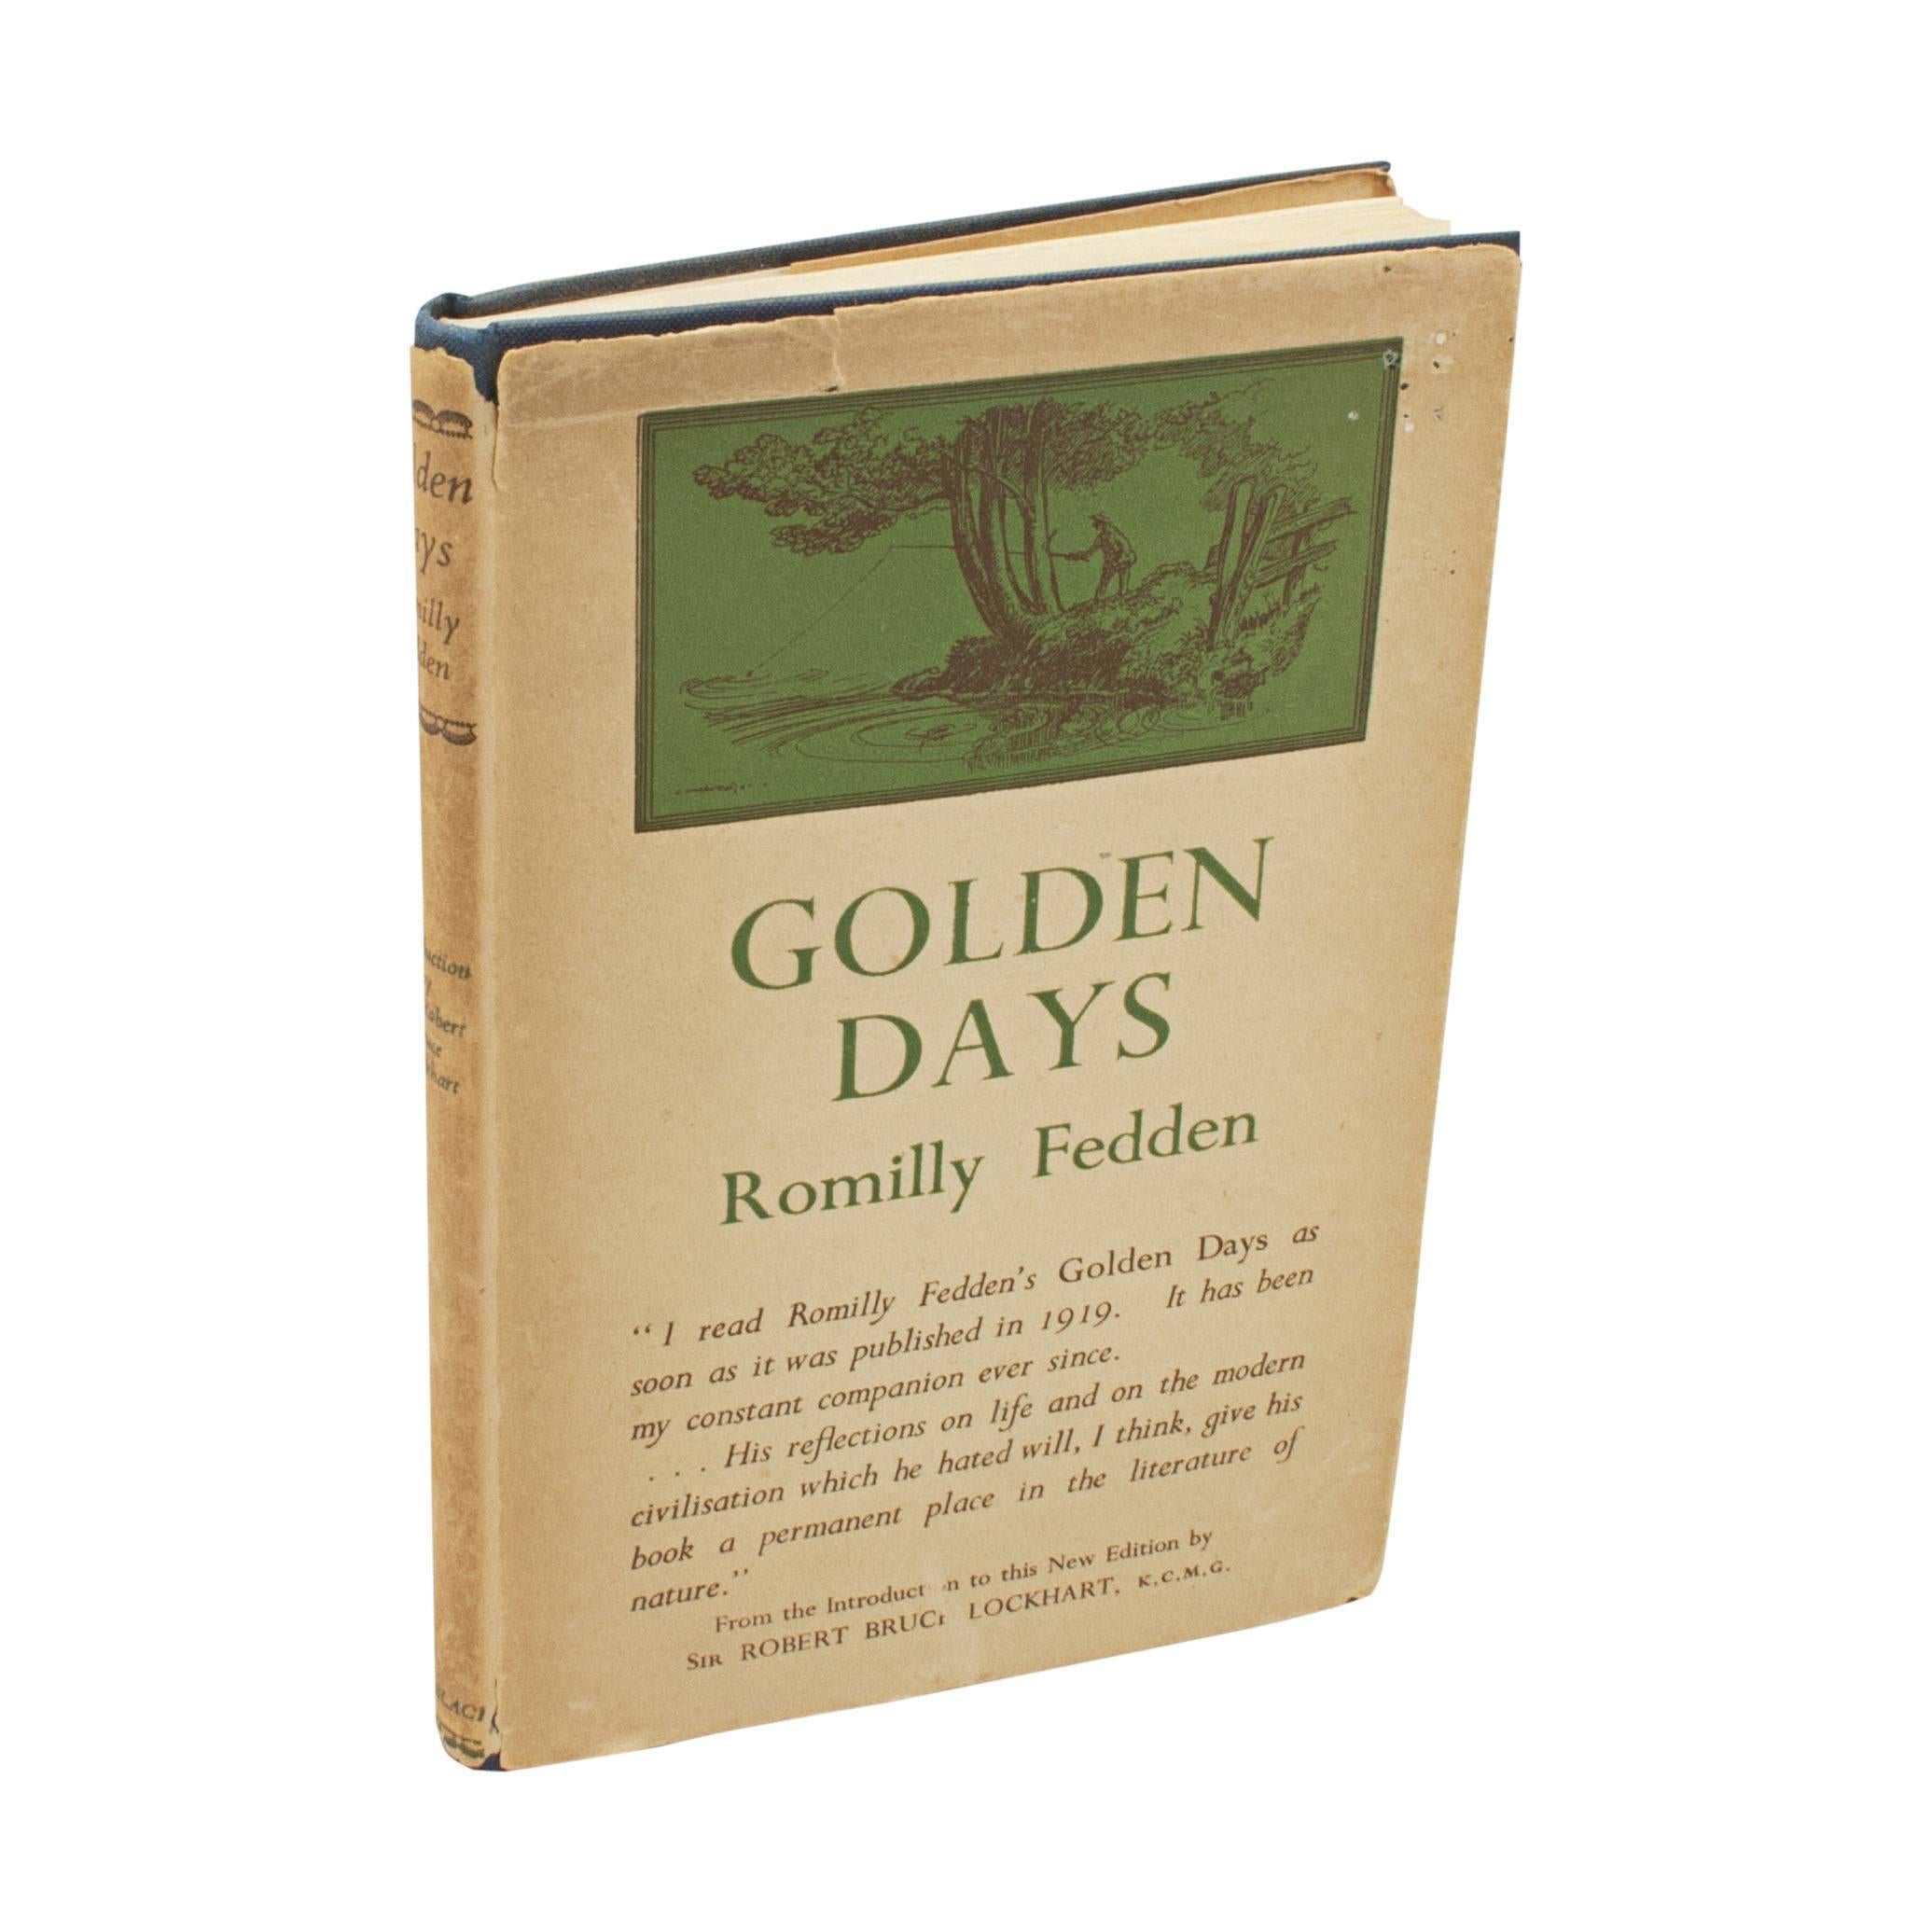 Ein altes Angelbuch, Goldene Tage von Romilly Fedden
Ein gutes Angelbuch von Romilly Fedden aus dem Jahr 1949 (2. Auflage) mit dem Titel 